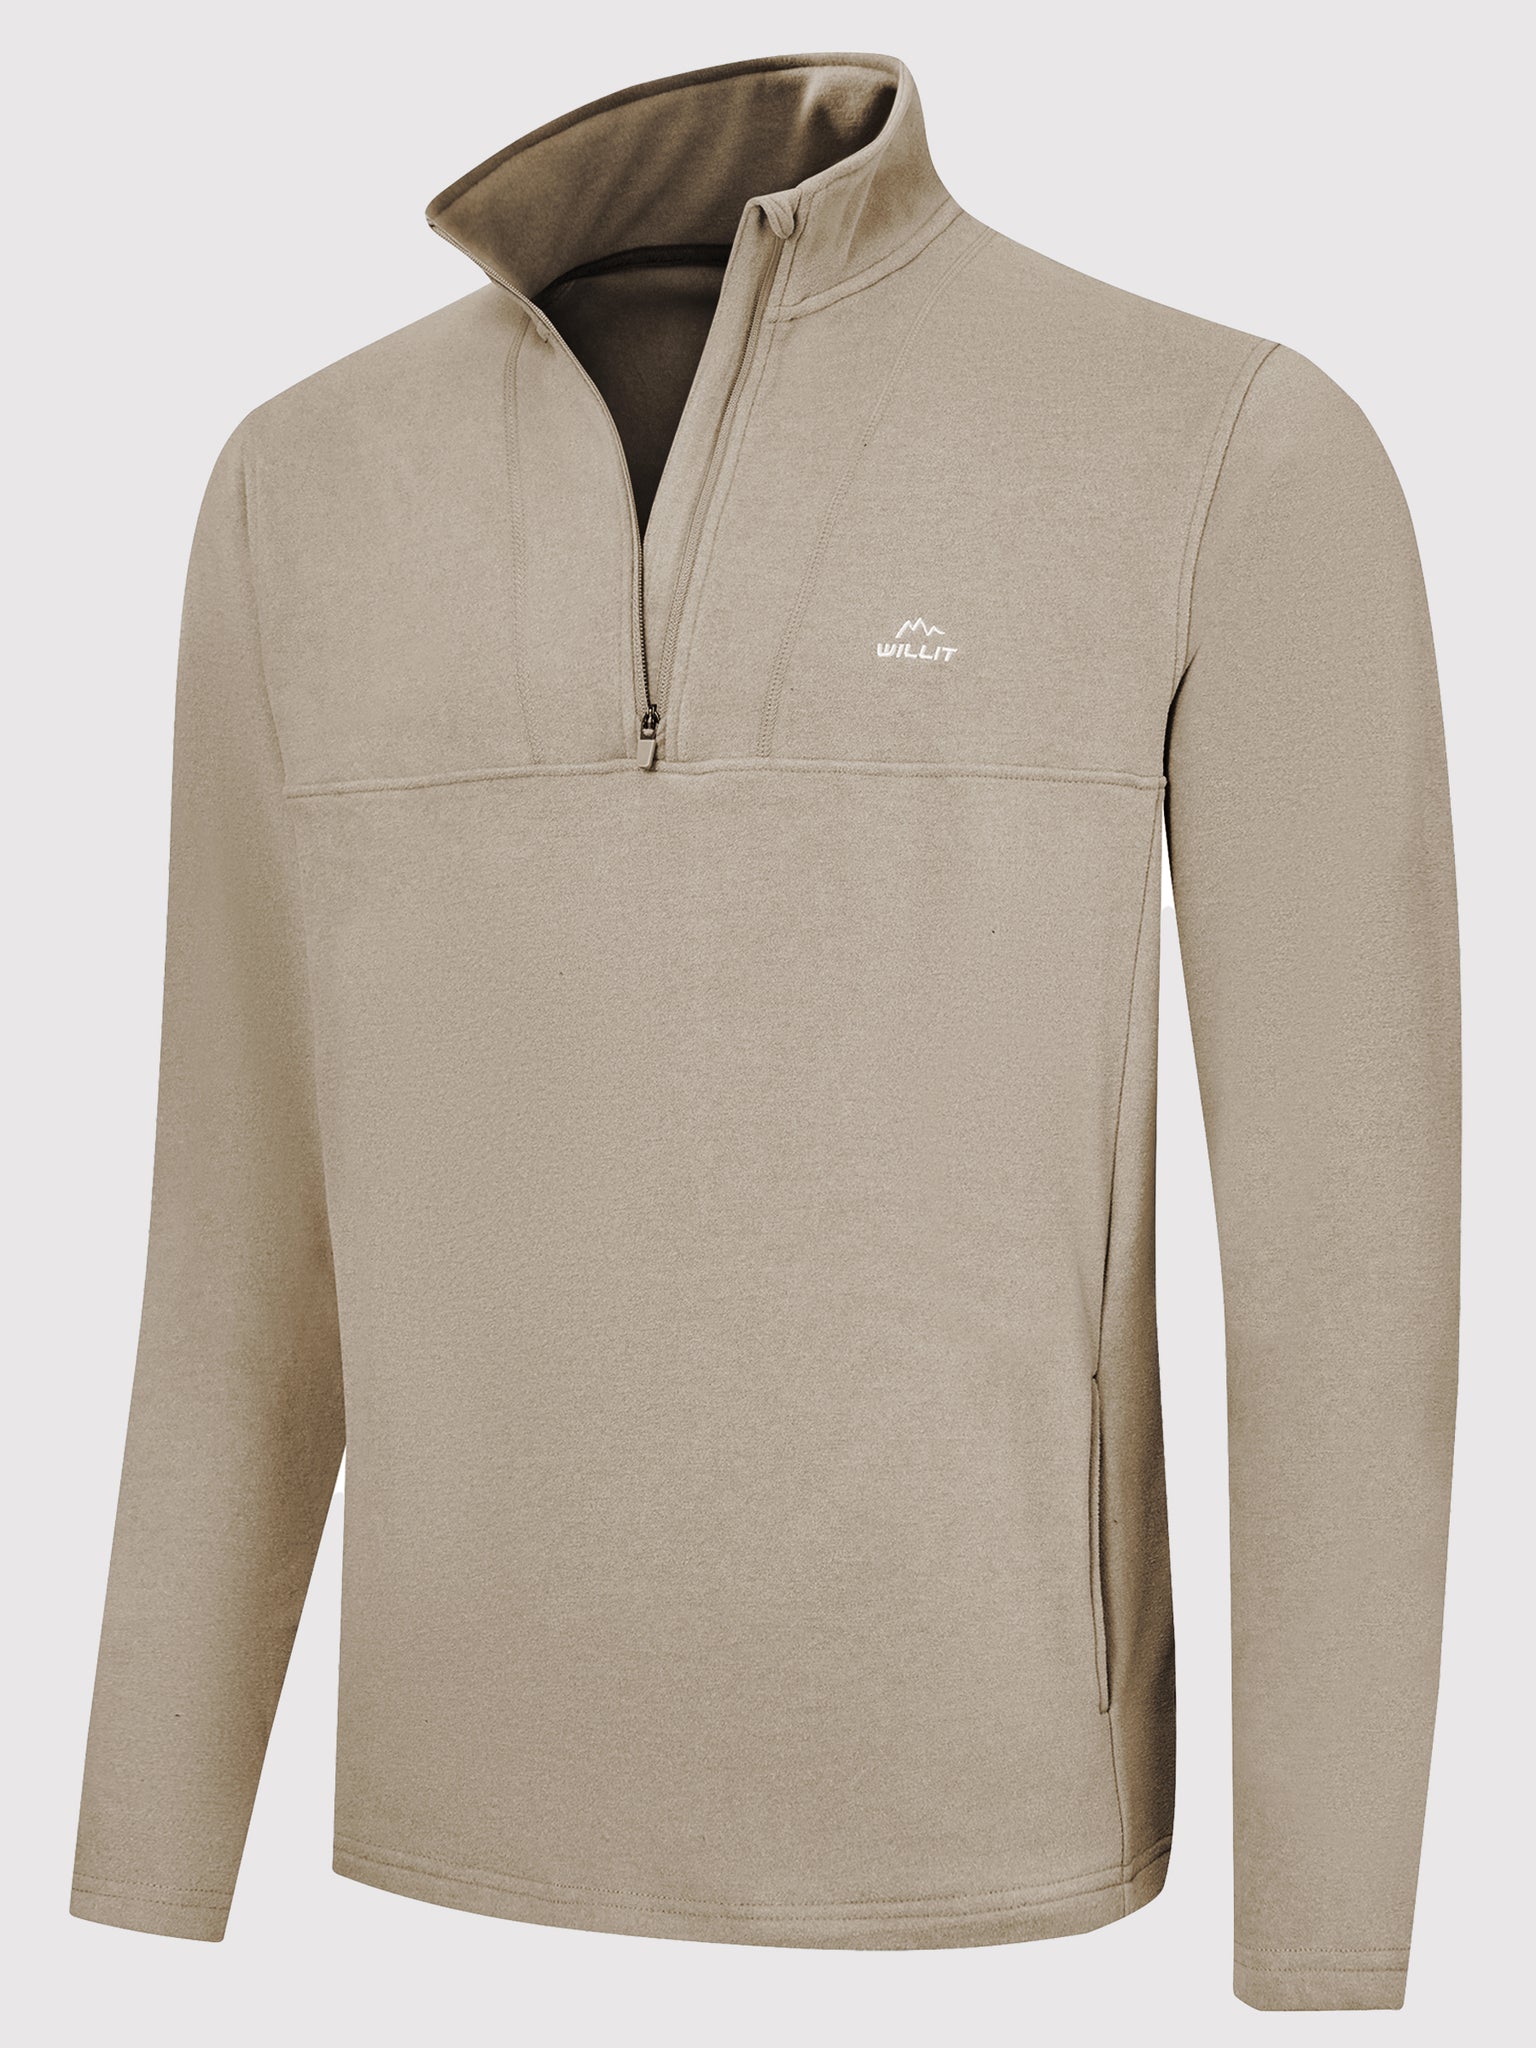 Men's Fleece Quarter Zip Pullover_MilkTea_model5